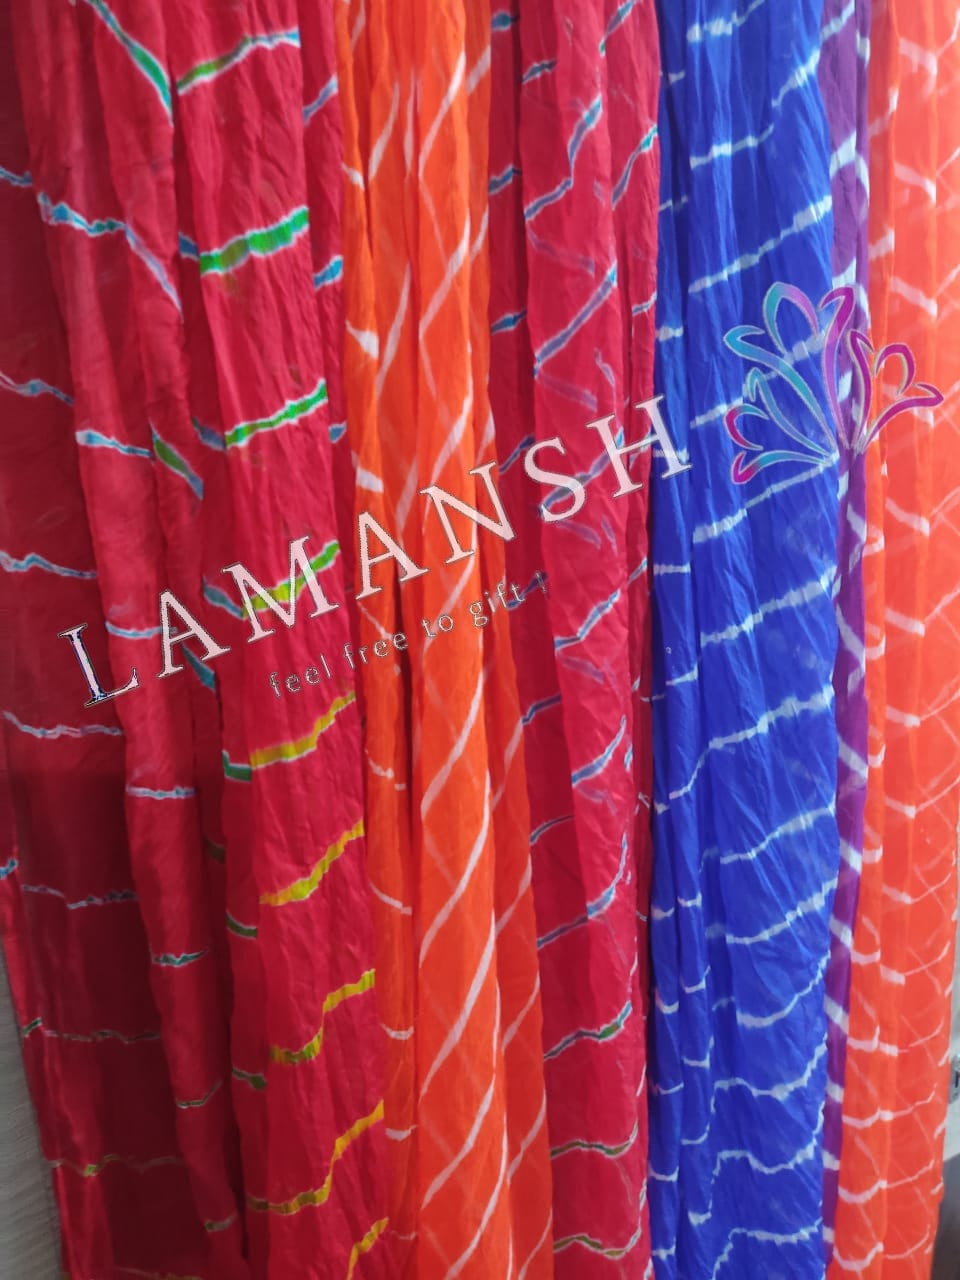 Lamansh return gifts Assorted colours LAMANSH® Pack of 50 Colorful Lehariya Dupatta / Jaipuri Design dupatta's for gifting (2.5 metre)